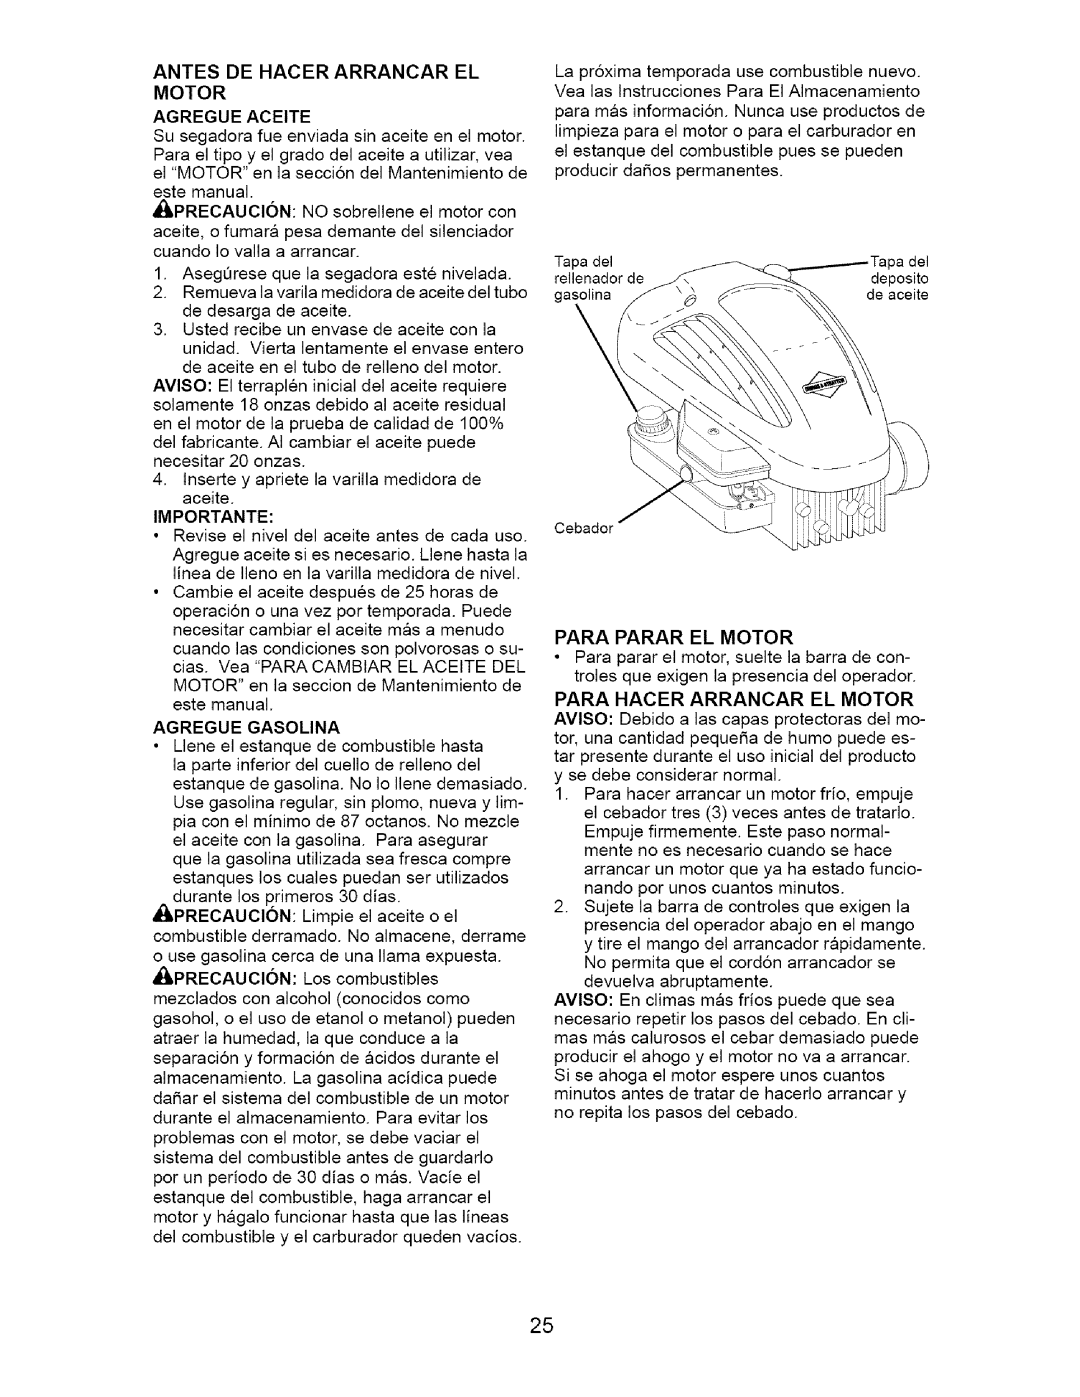 Craftsman 917.385140 owner manual Motor Agregue Aceite, Para Parar El Motor 